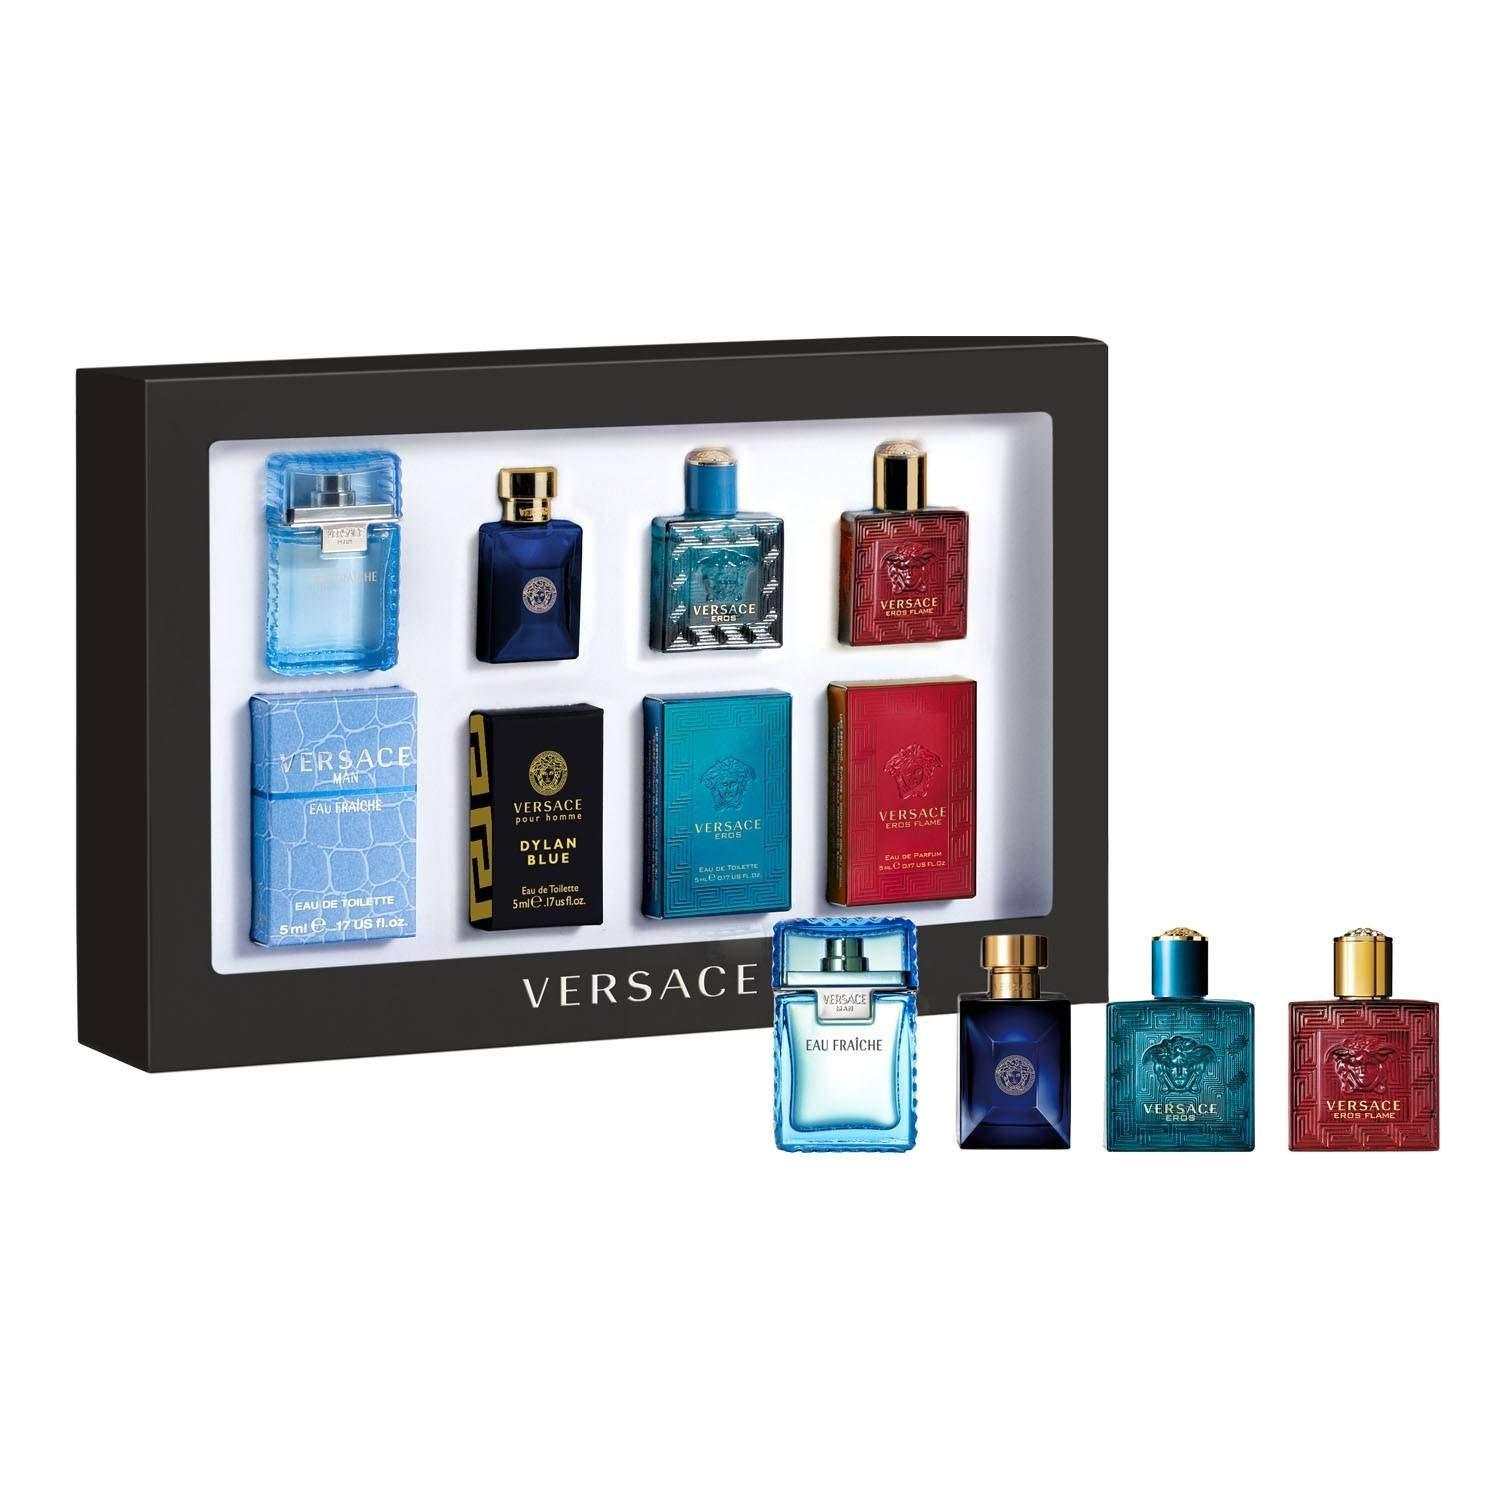 Versace 4 Piece Mini Gift Set for Men Eau Fraiche Dylan Blue Eros